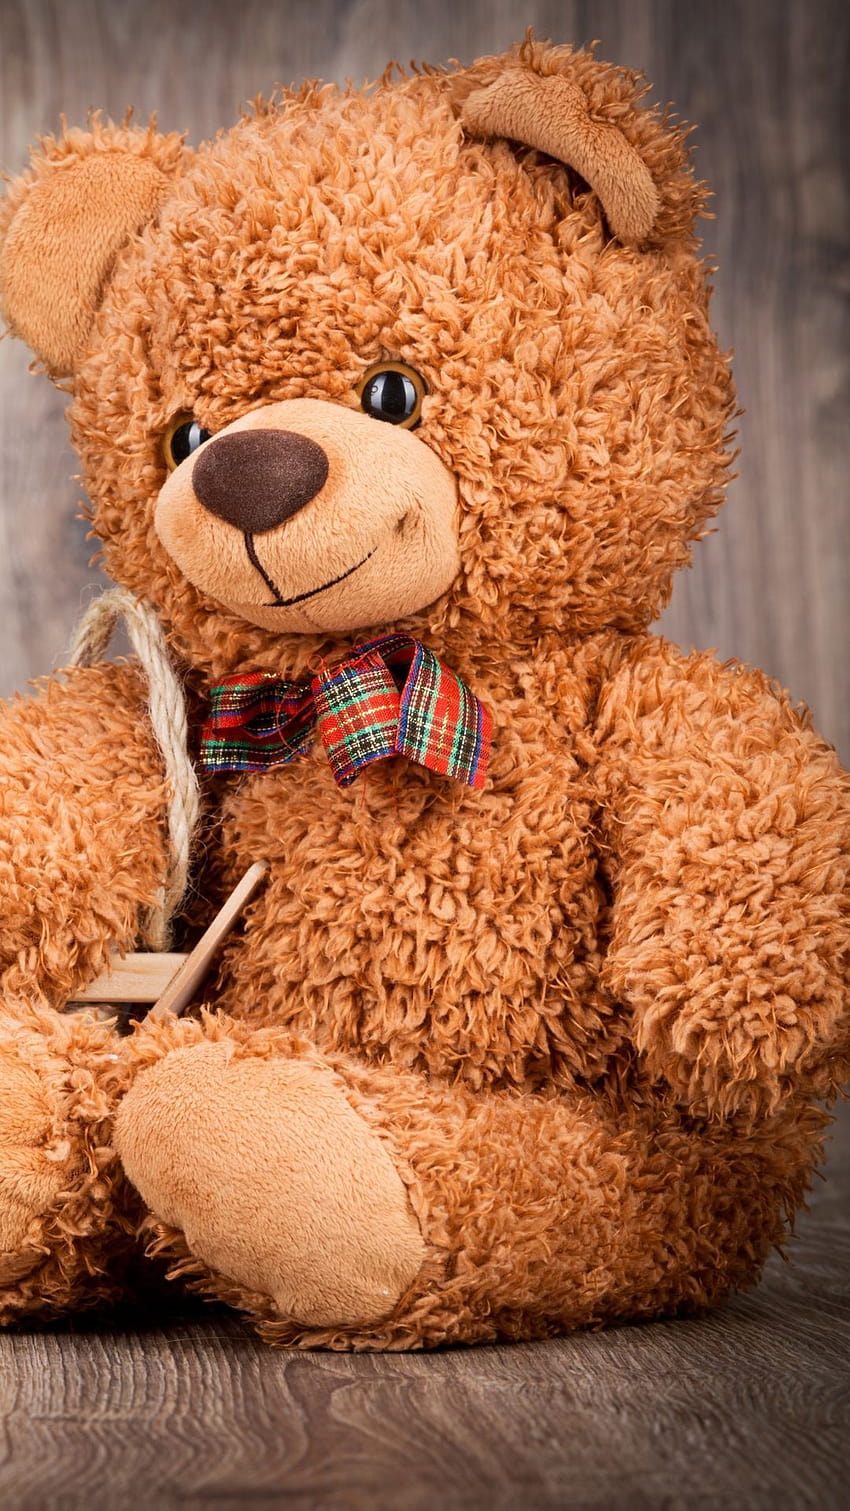 Teddy Bear on Dog, teddy bear aesthetic HD phone wallpaper